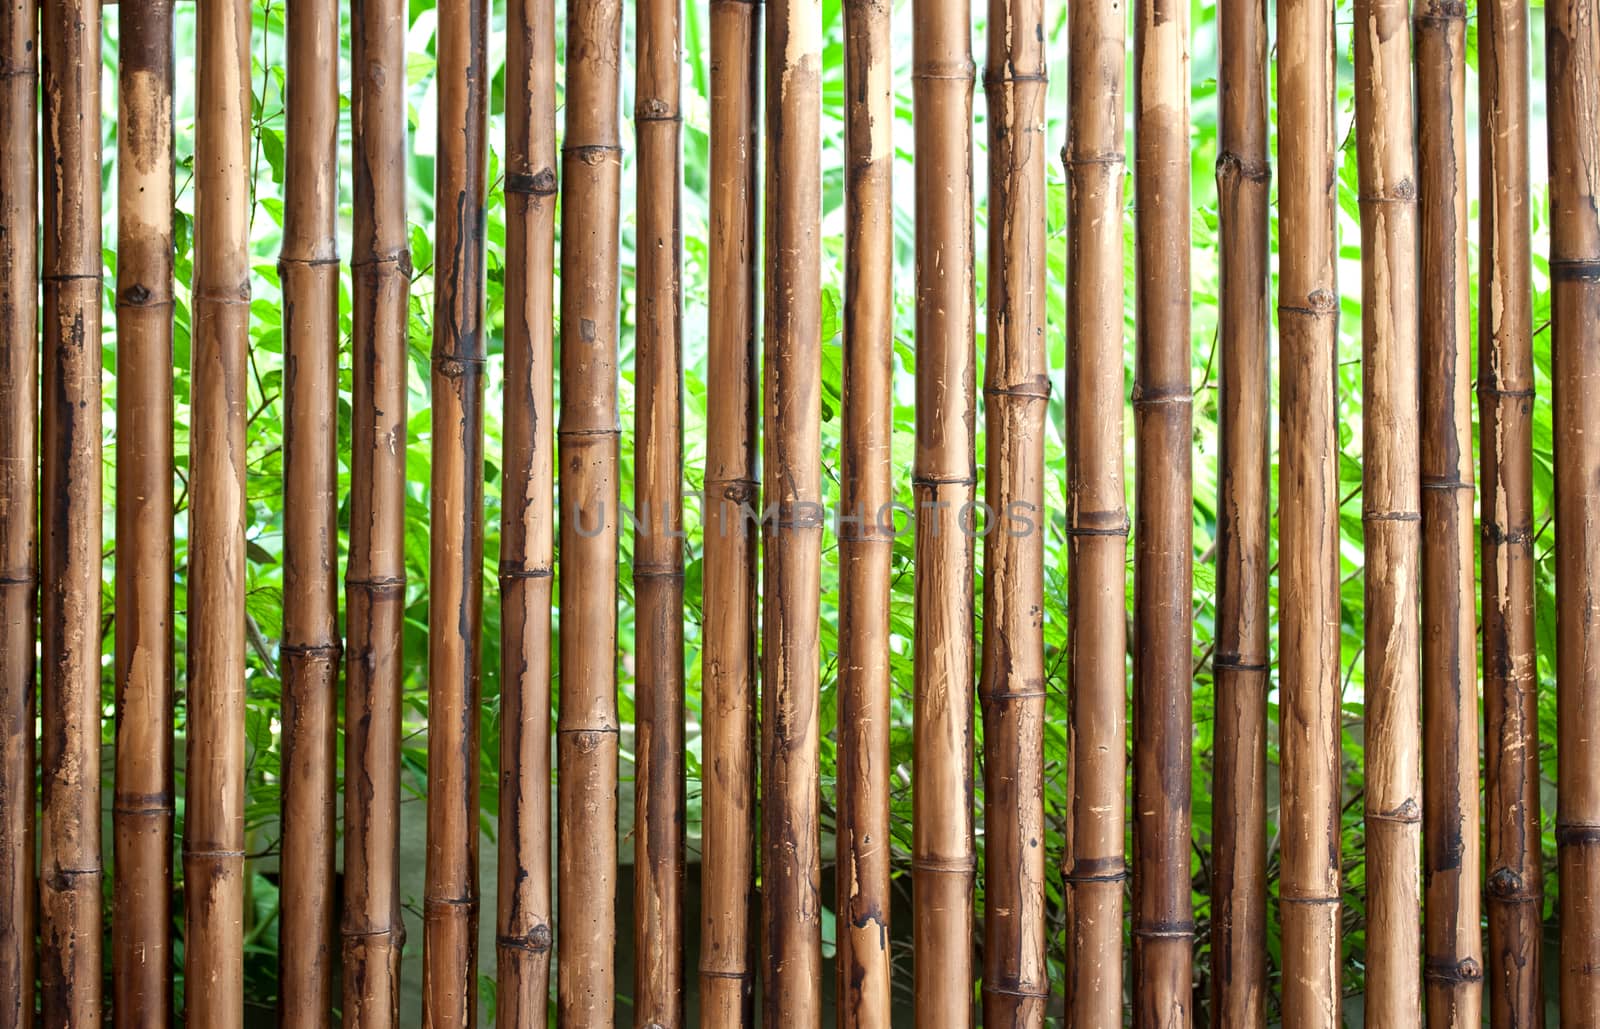 bamboo fence background